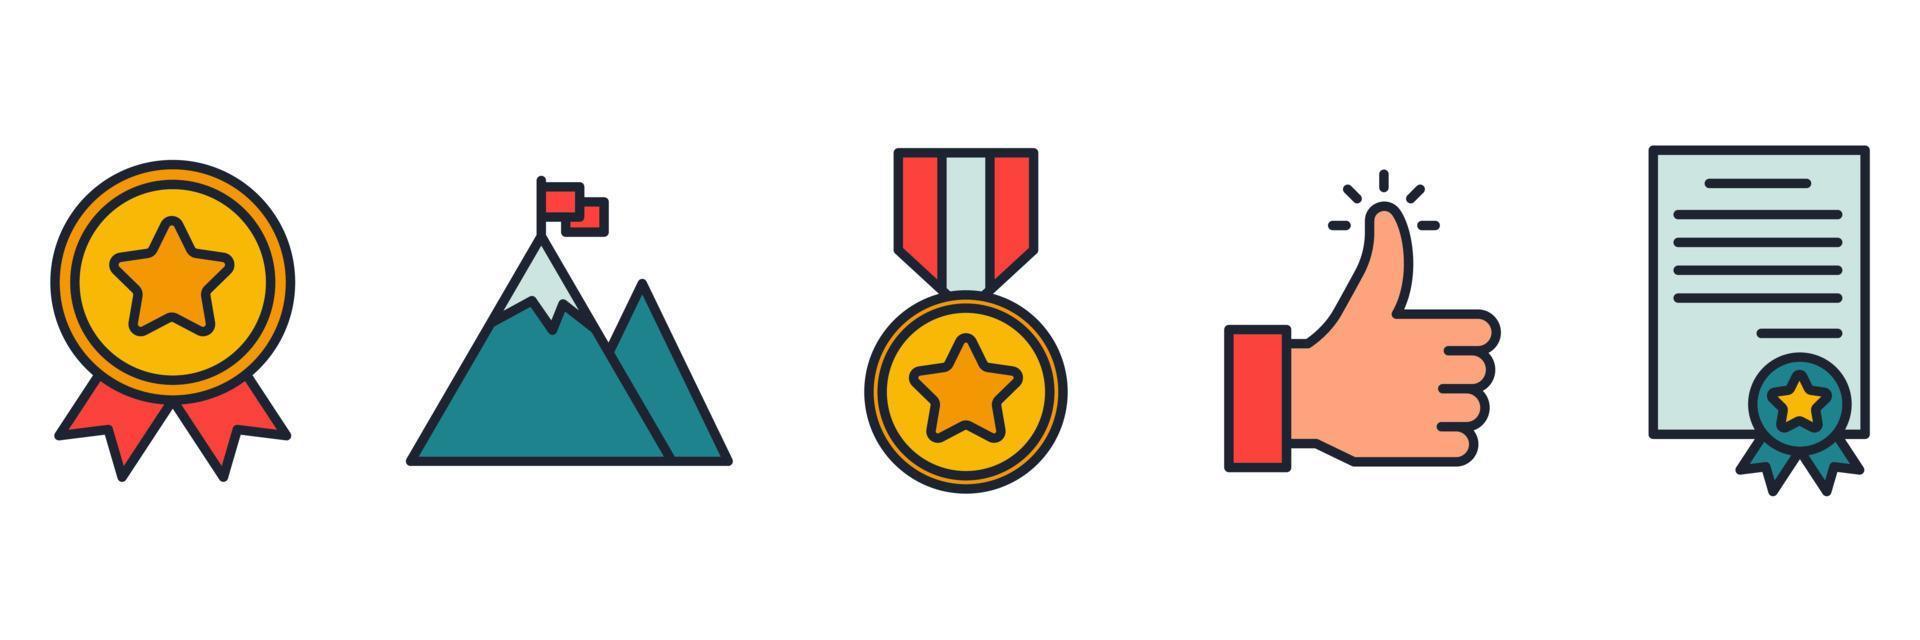 winnende prijzen instellen pictogram symbool sjabloon voor grafisch en webdesign collectie logo vectorillustratie vector